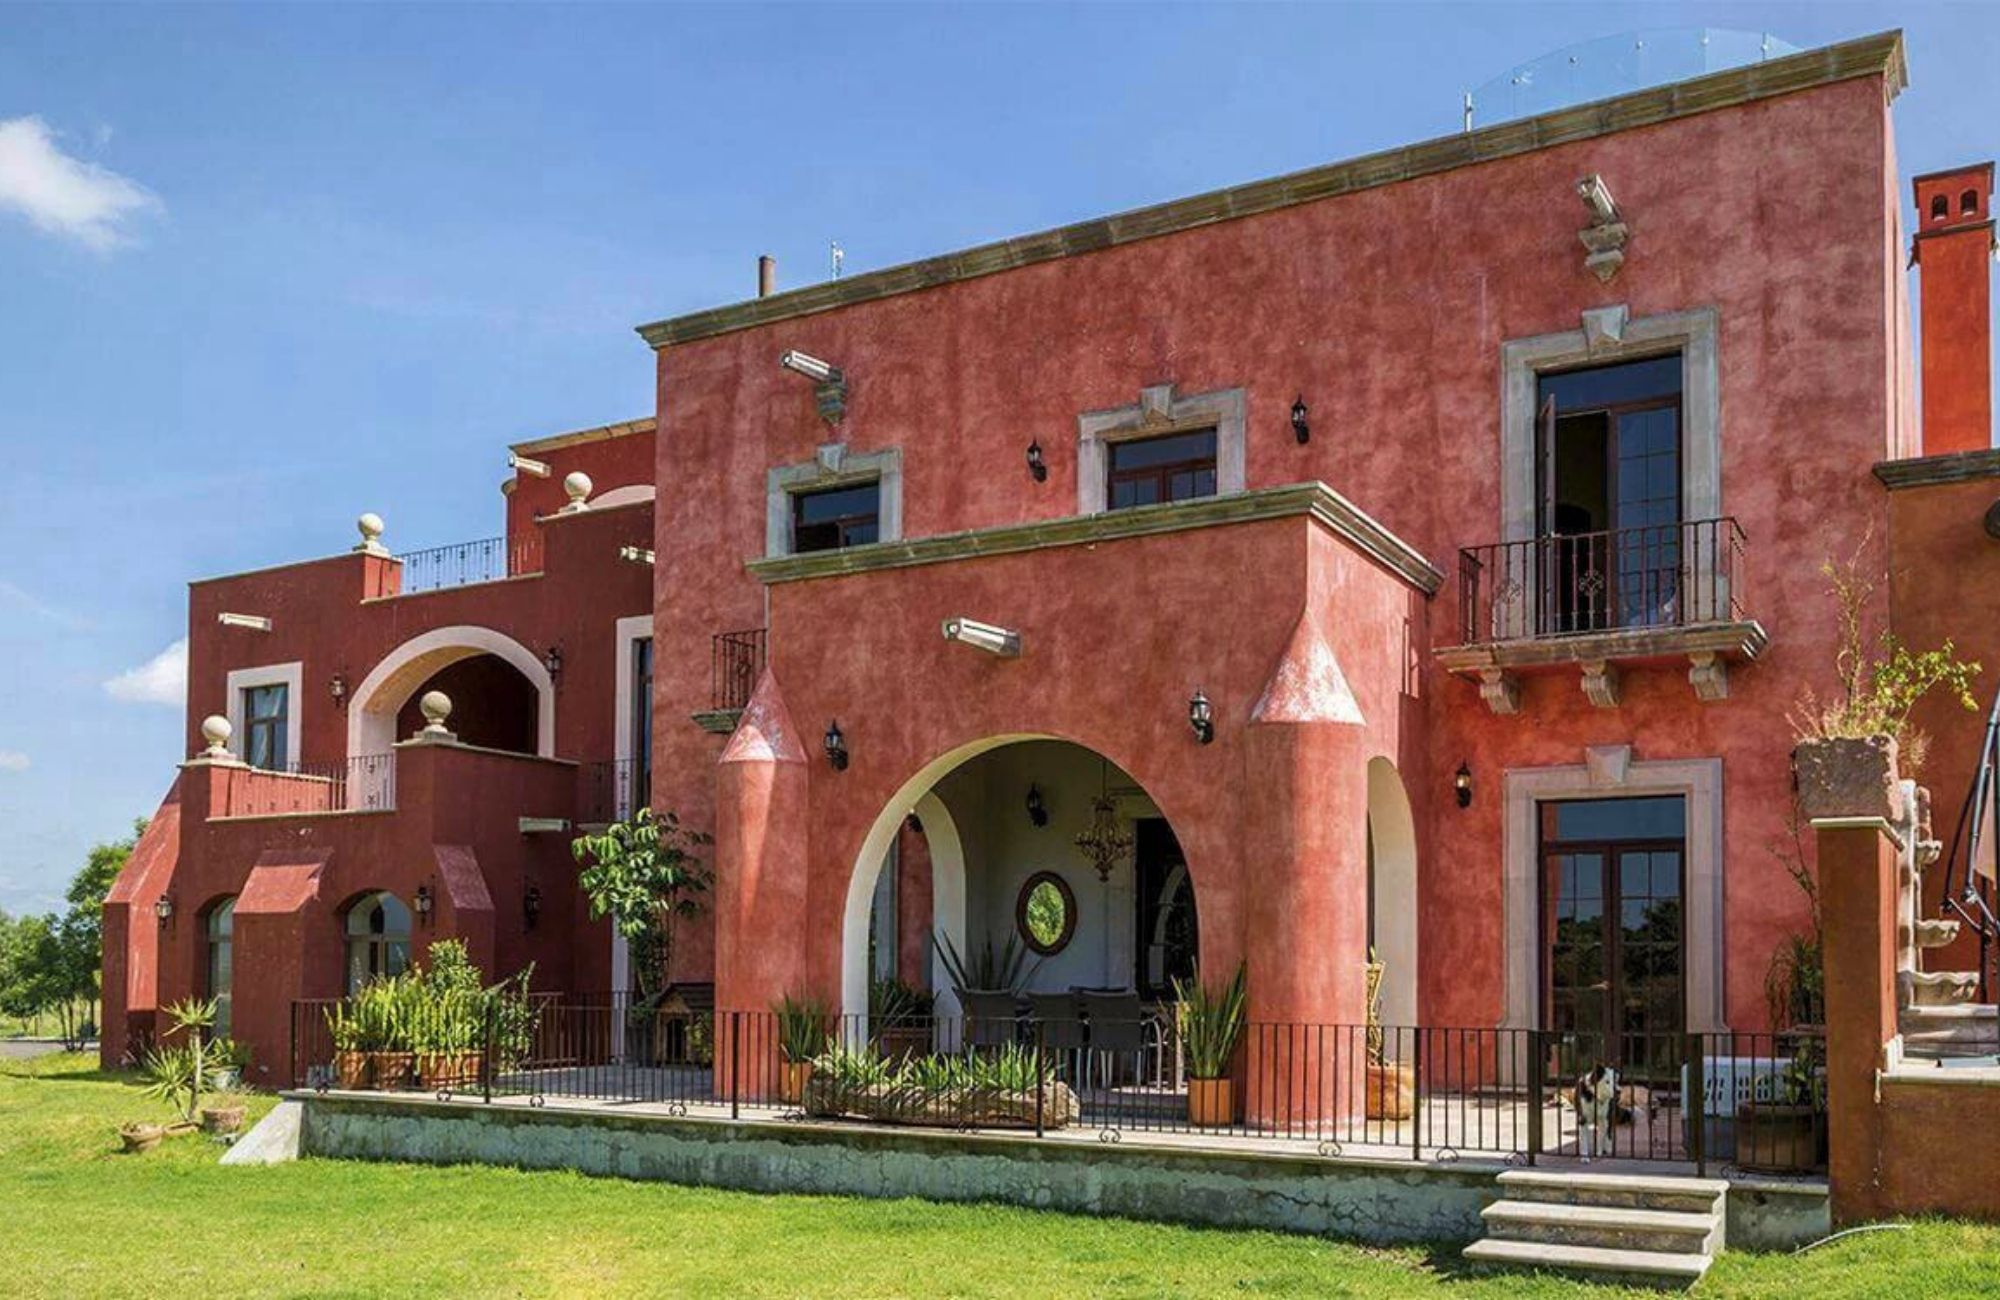 Lote de 641 m2 en Residencial de lujo con amenidades, en venta San Miguel de Allende.